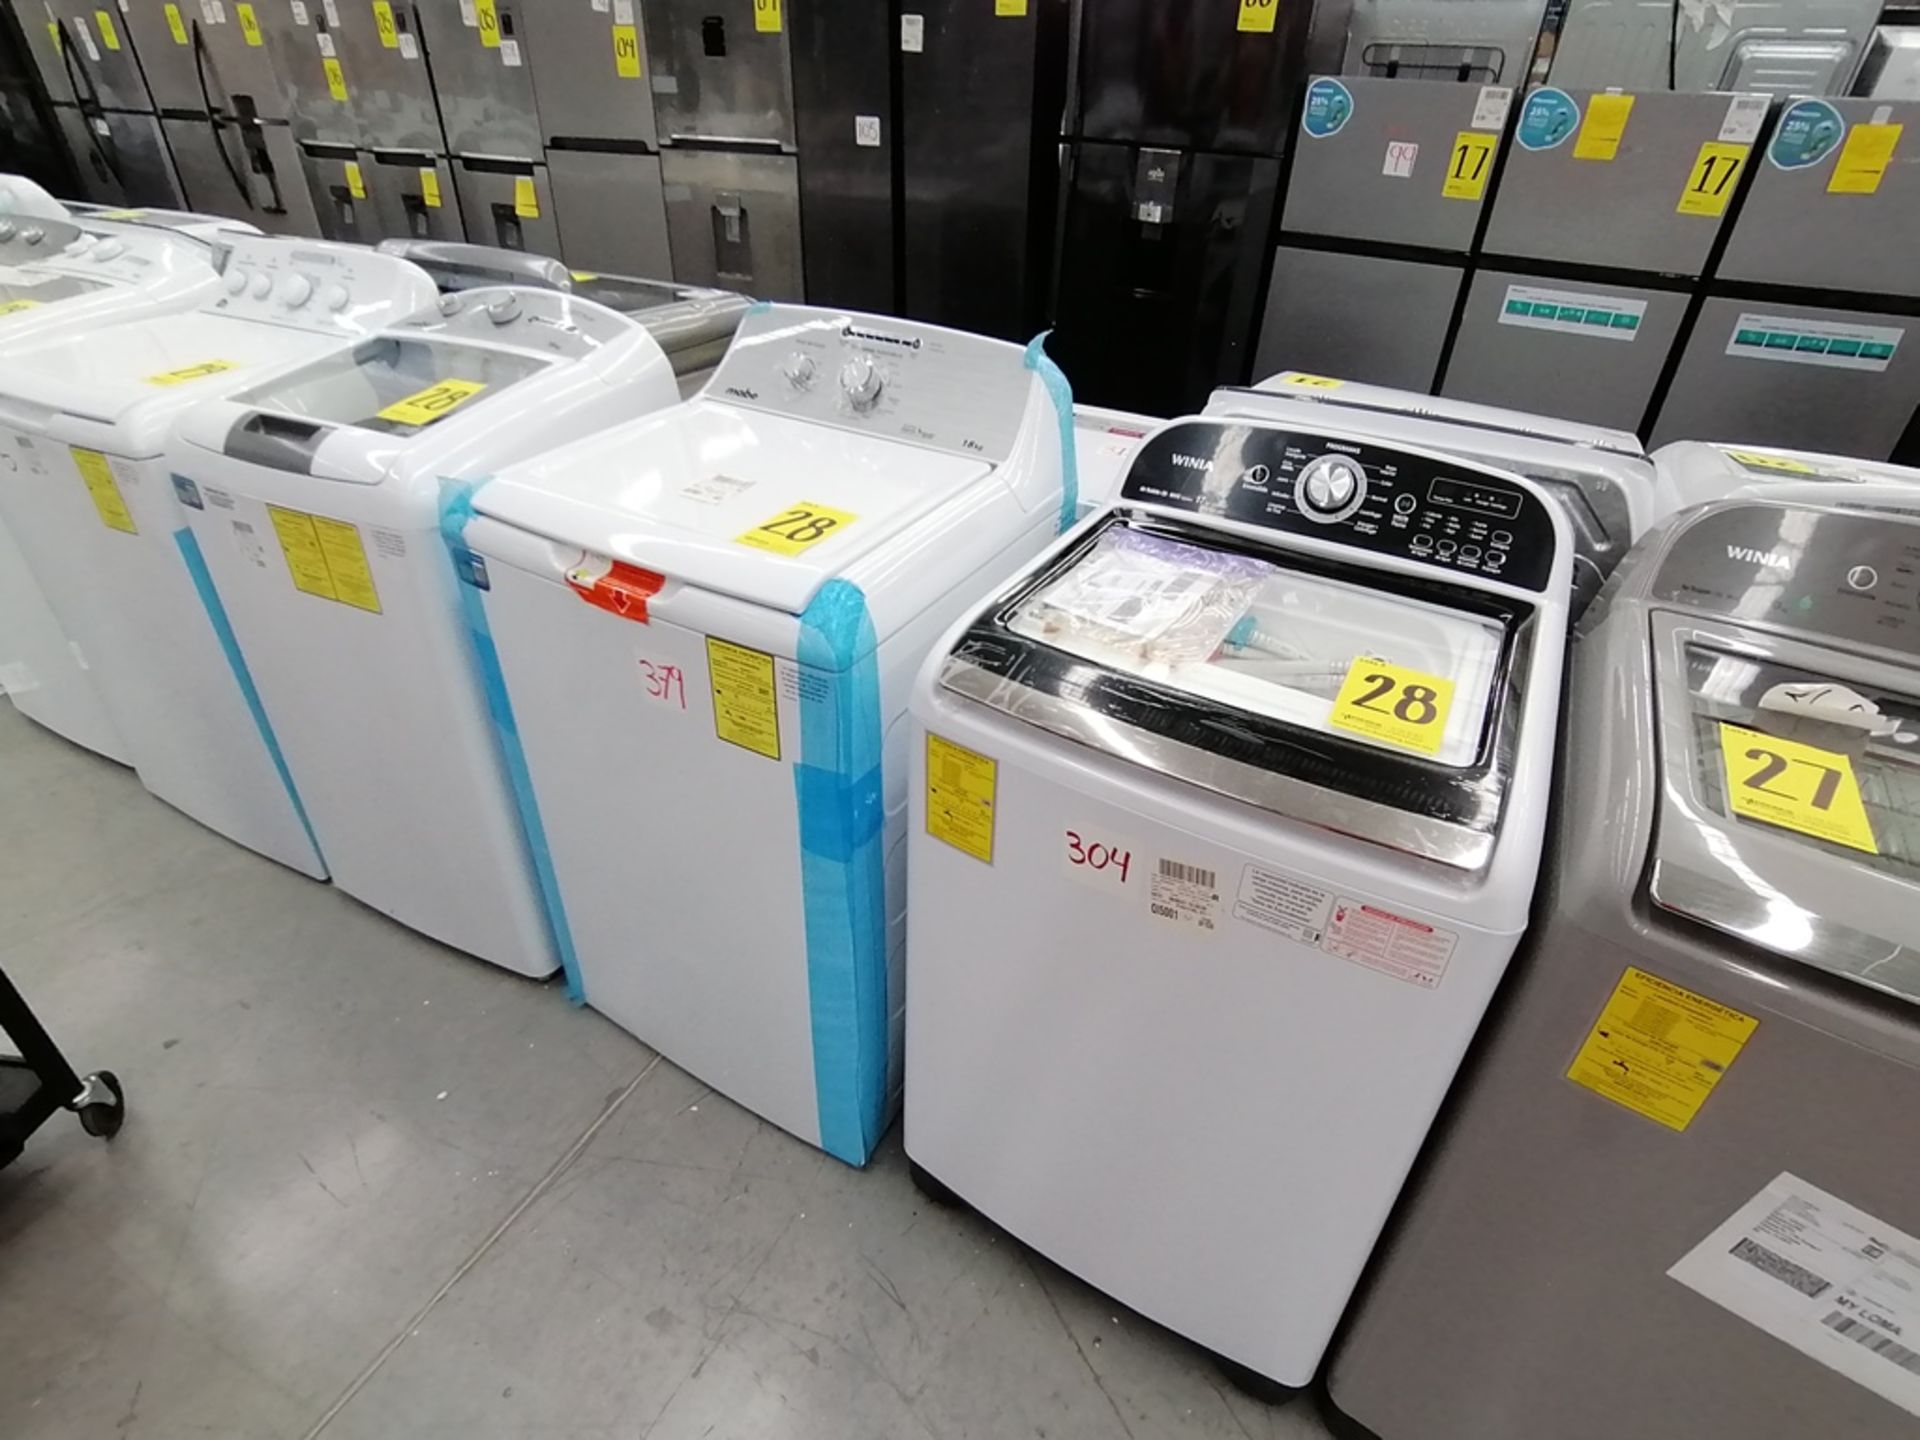 Lote de 3 lavadoras contiene: 1 Lavadora de 16KG, Marca Mabe, Modelo LMA46102VBAB02, Serie 2108S802 - Image 16 of 29